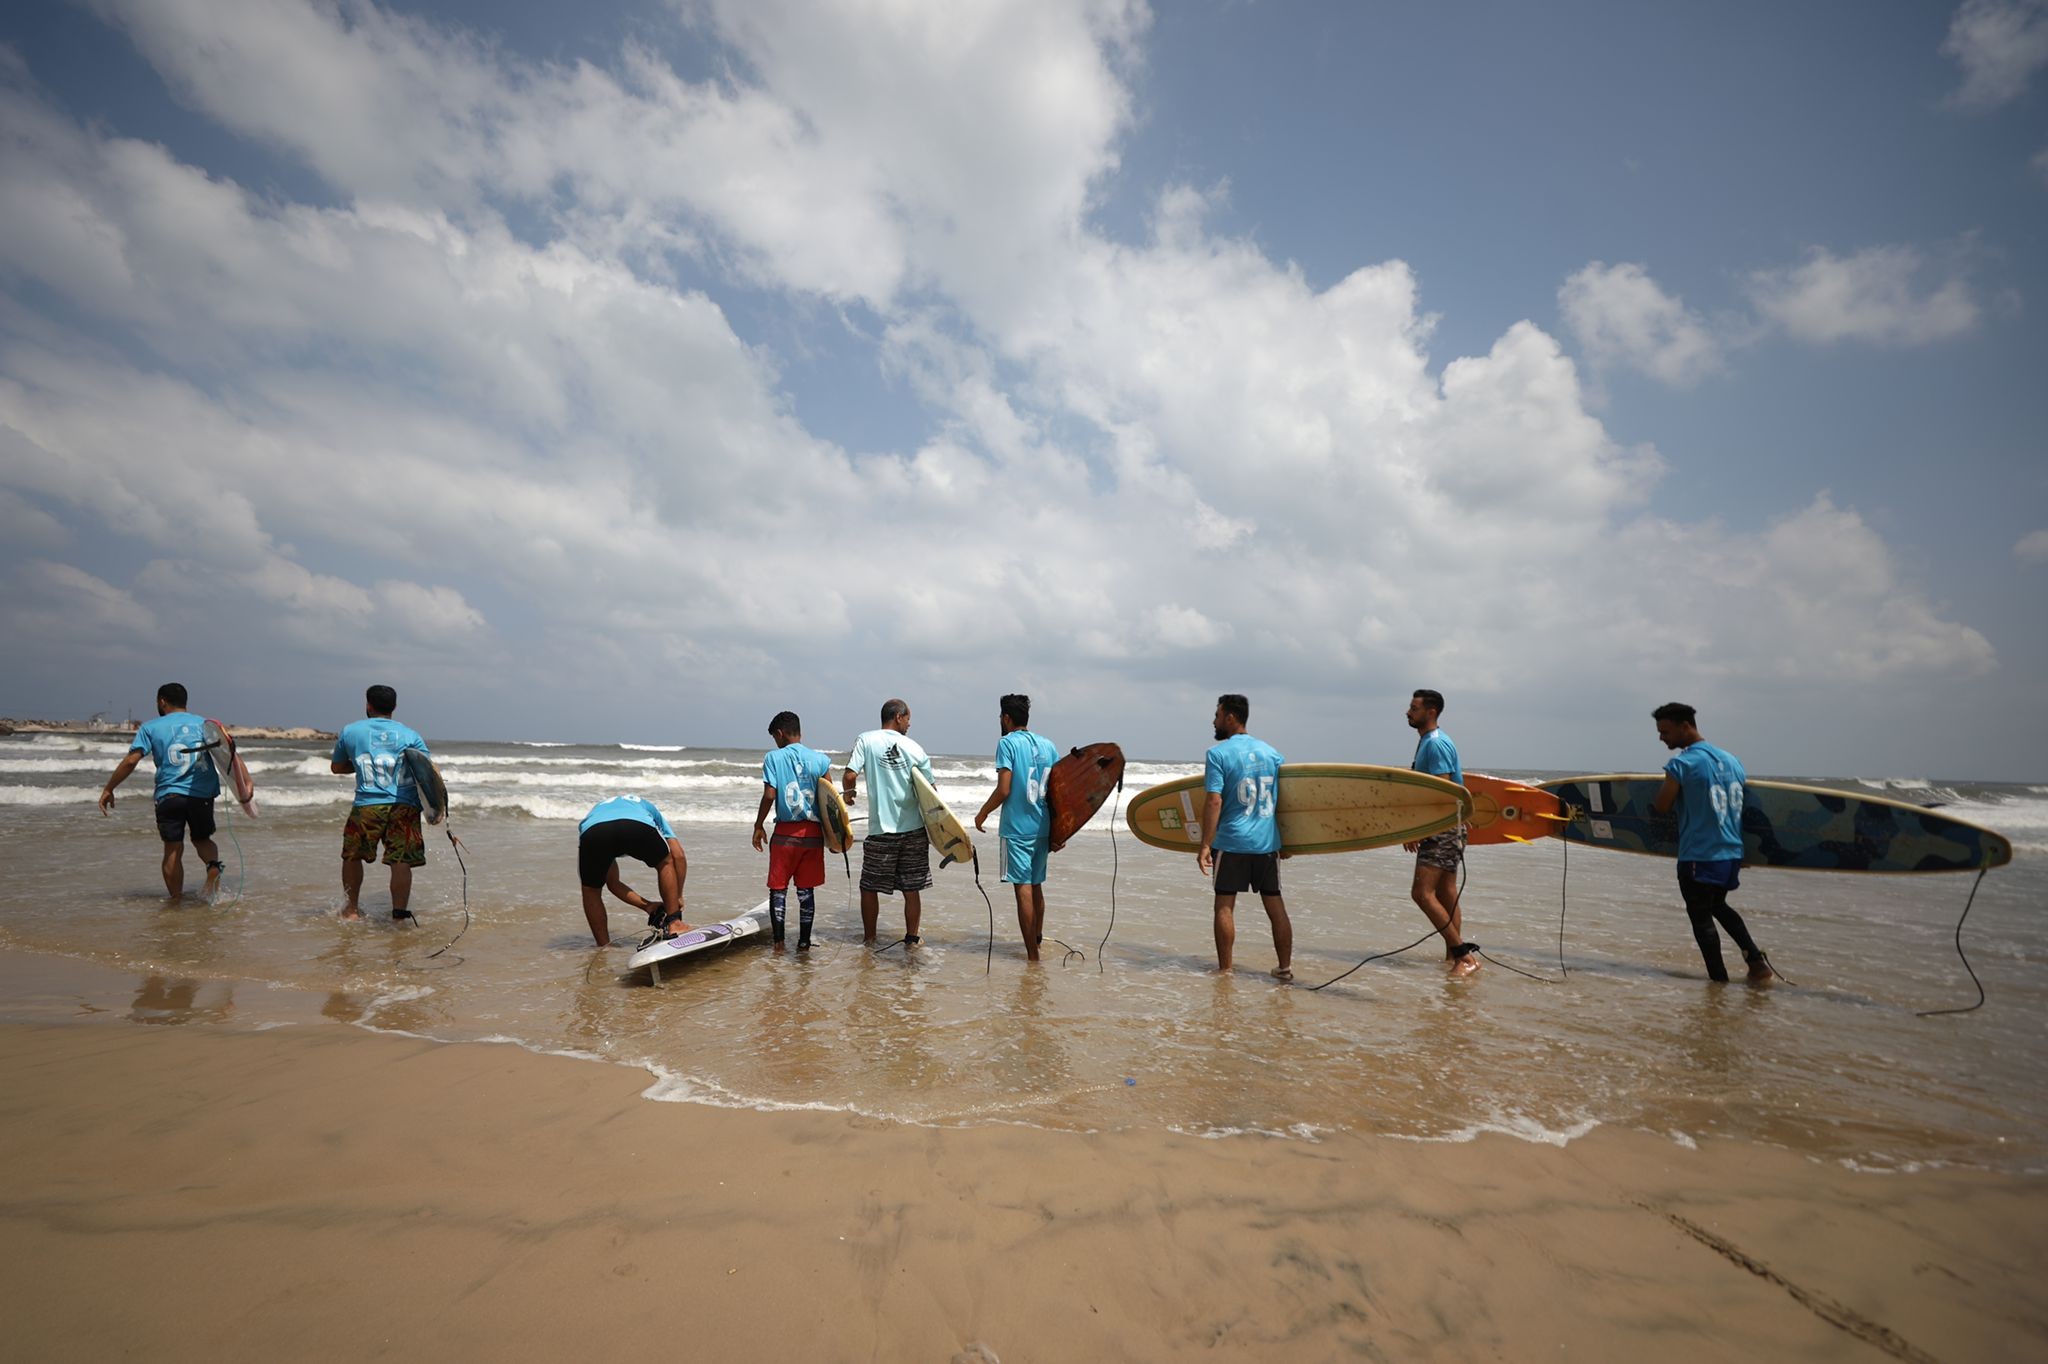 الاتحاد الفلسطيني للشراع والتجديف ينظم فعالية ركوب الأمواج على شاطئ بحر غزة برعاية بنك فلسطين 3.jpg